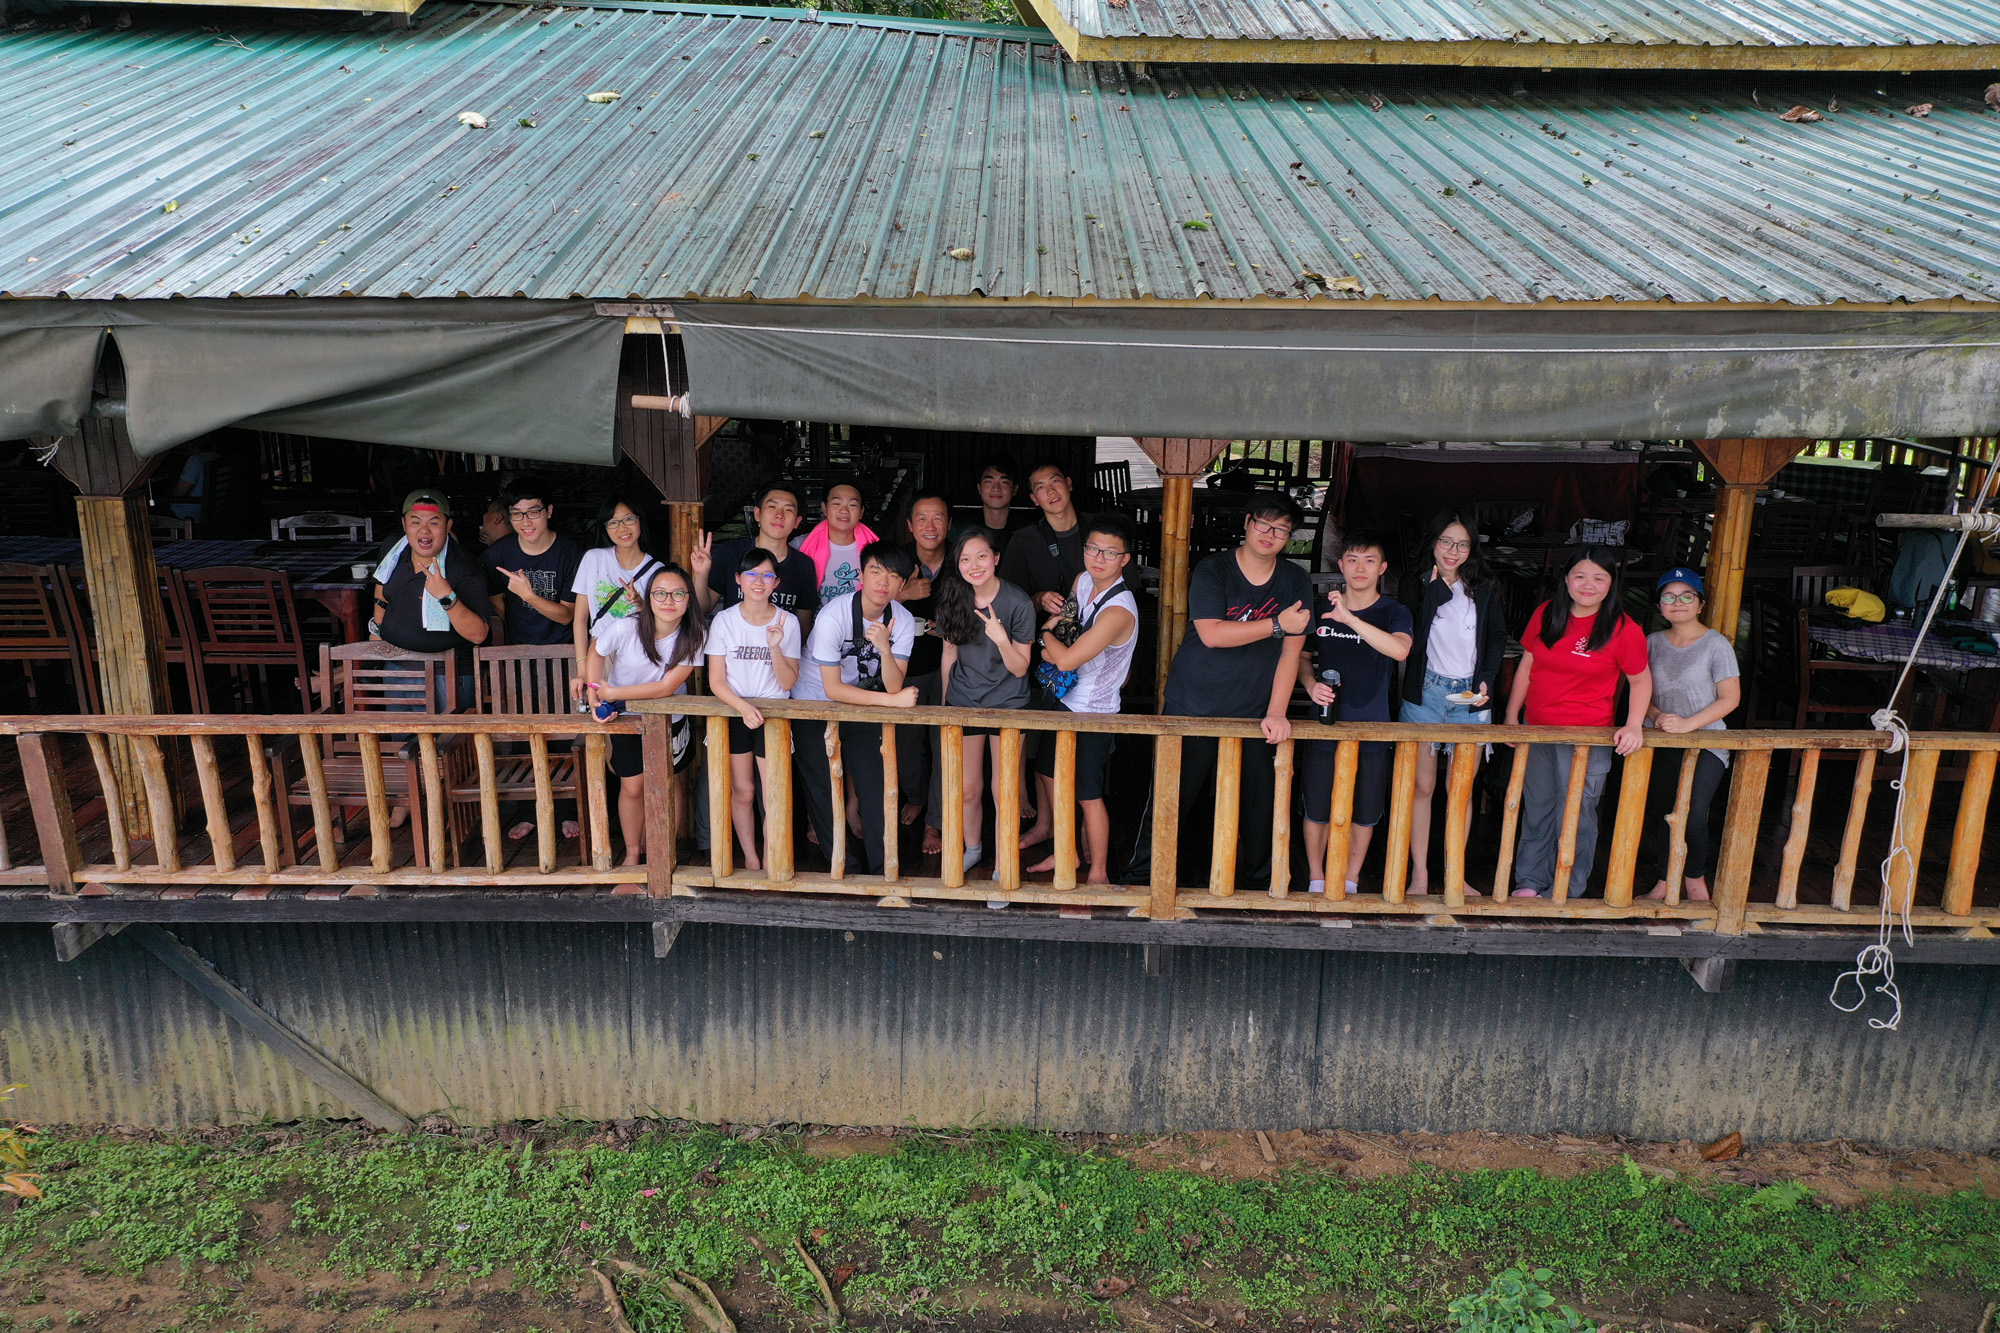 棚屋是婆罗洲当地土著部落的传统居所，同学有幸拜访及了解他们的独有文化。